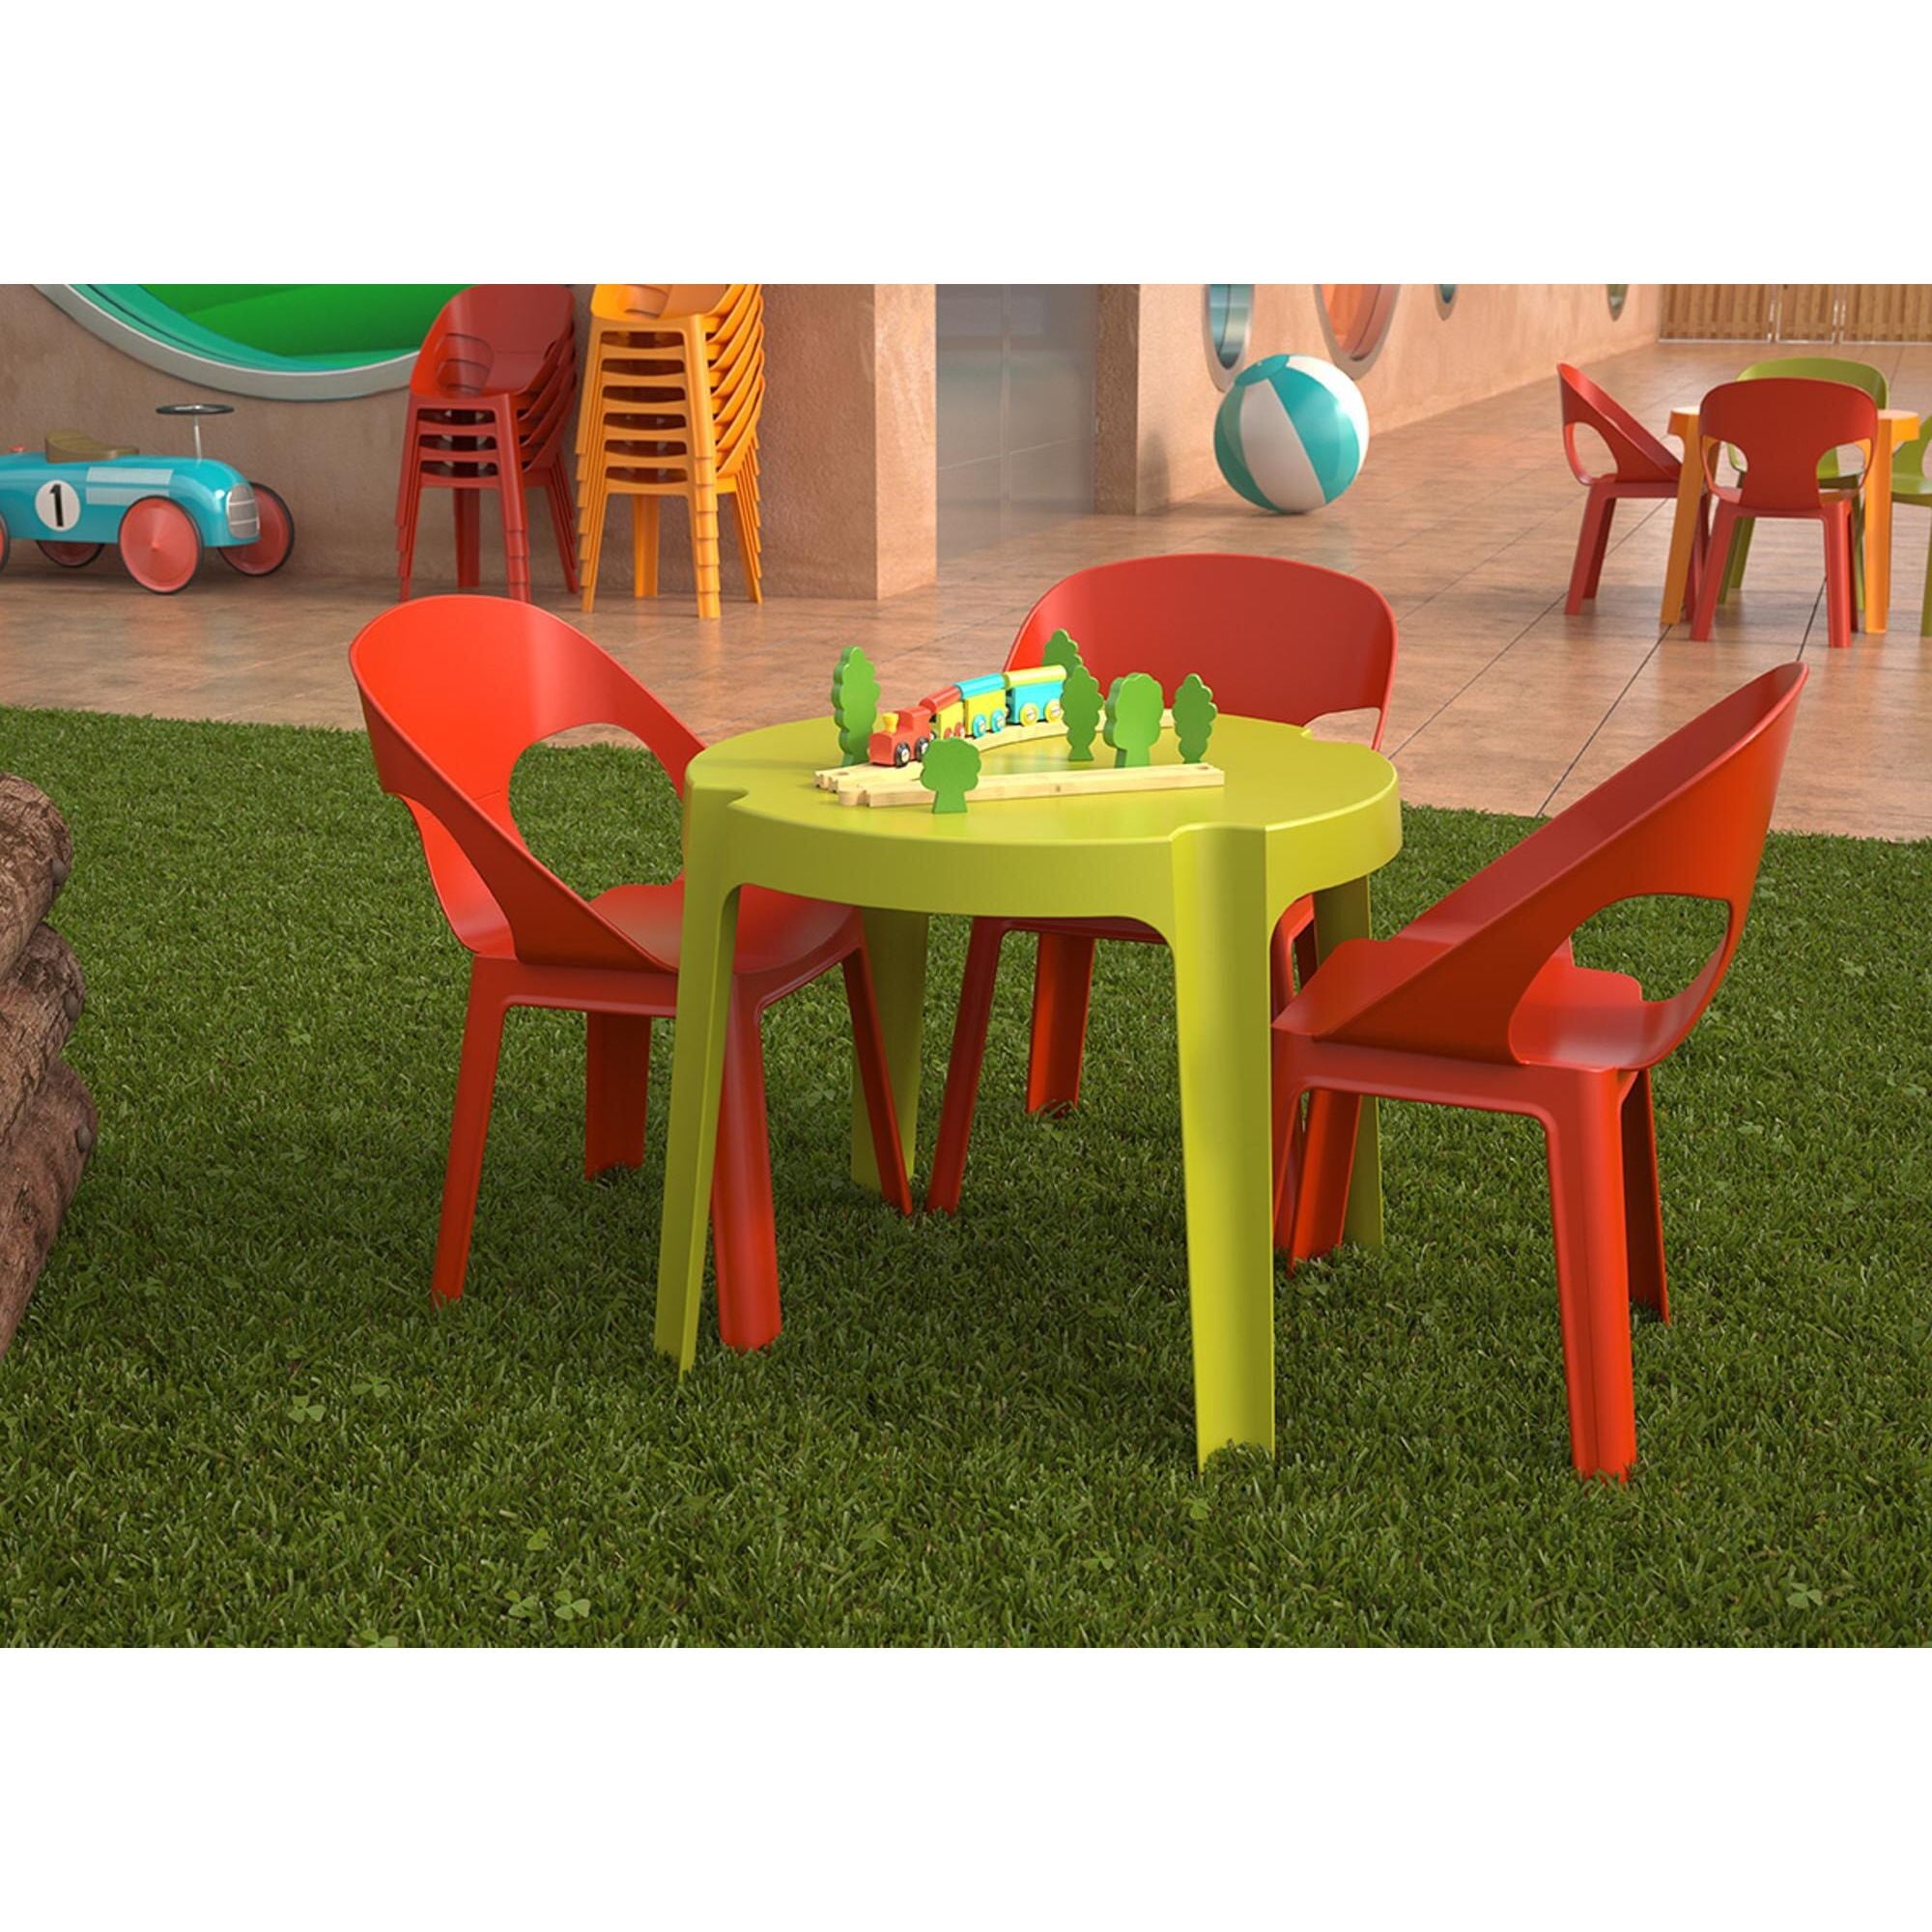 Garbar Rita children's chair table indoors, outdoor set 2+1 orange